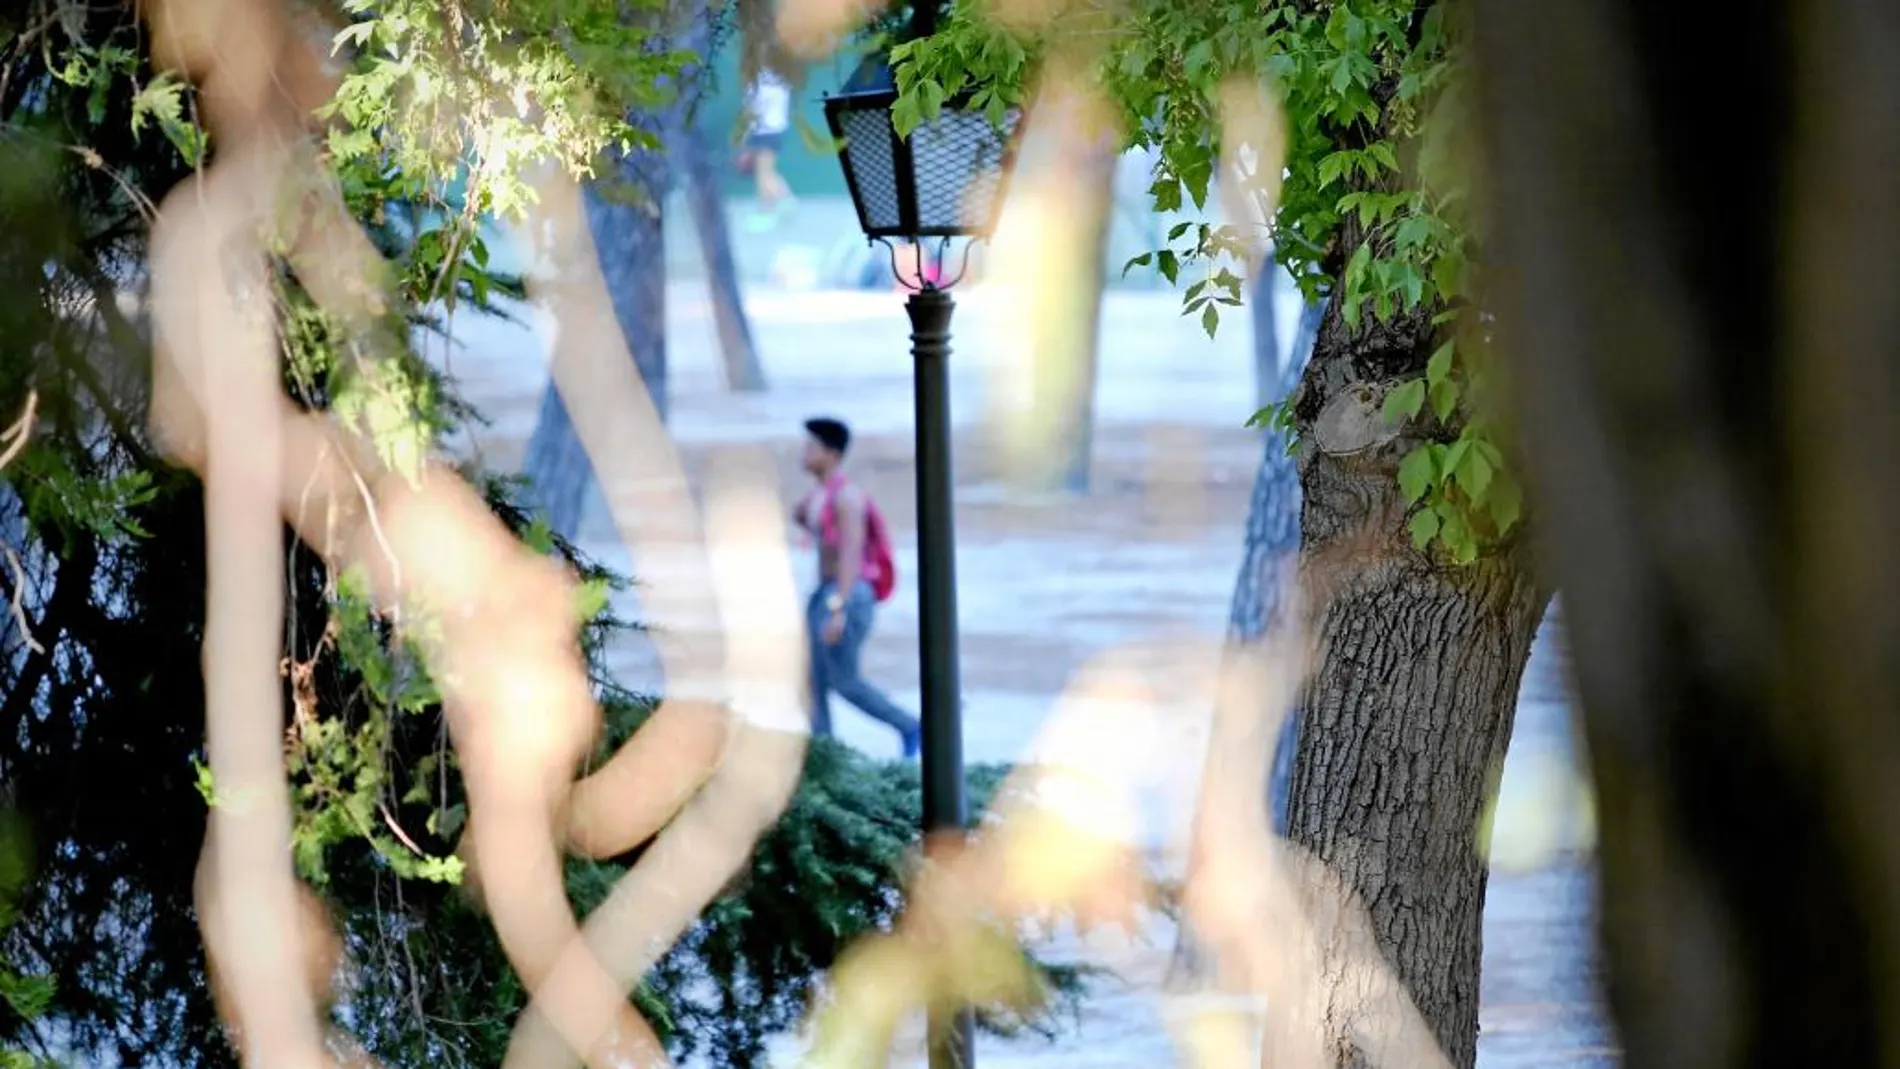 El parque Breogán, en Ventas, fue el escenario de la última agresión homófoba en la capital